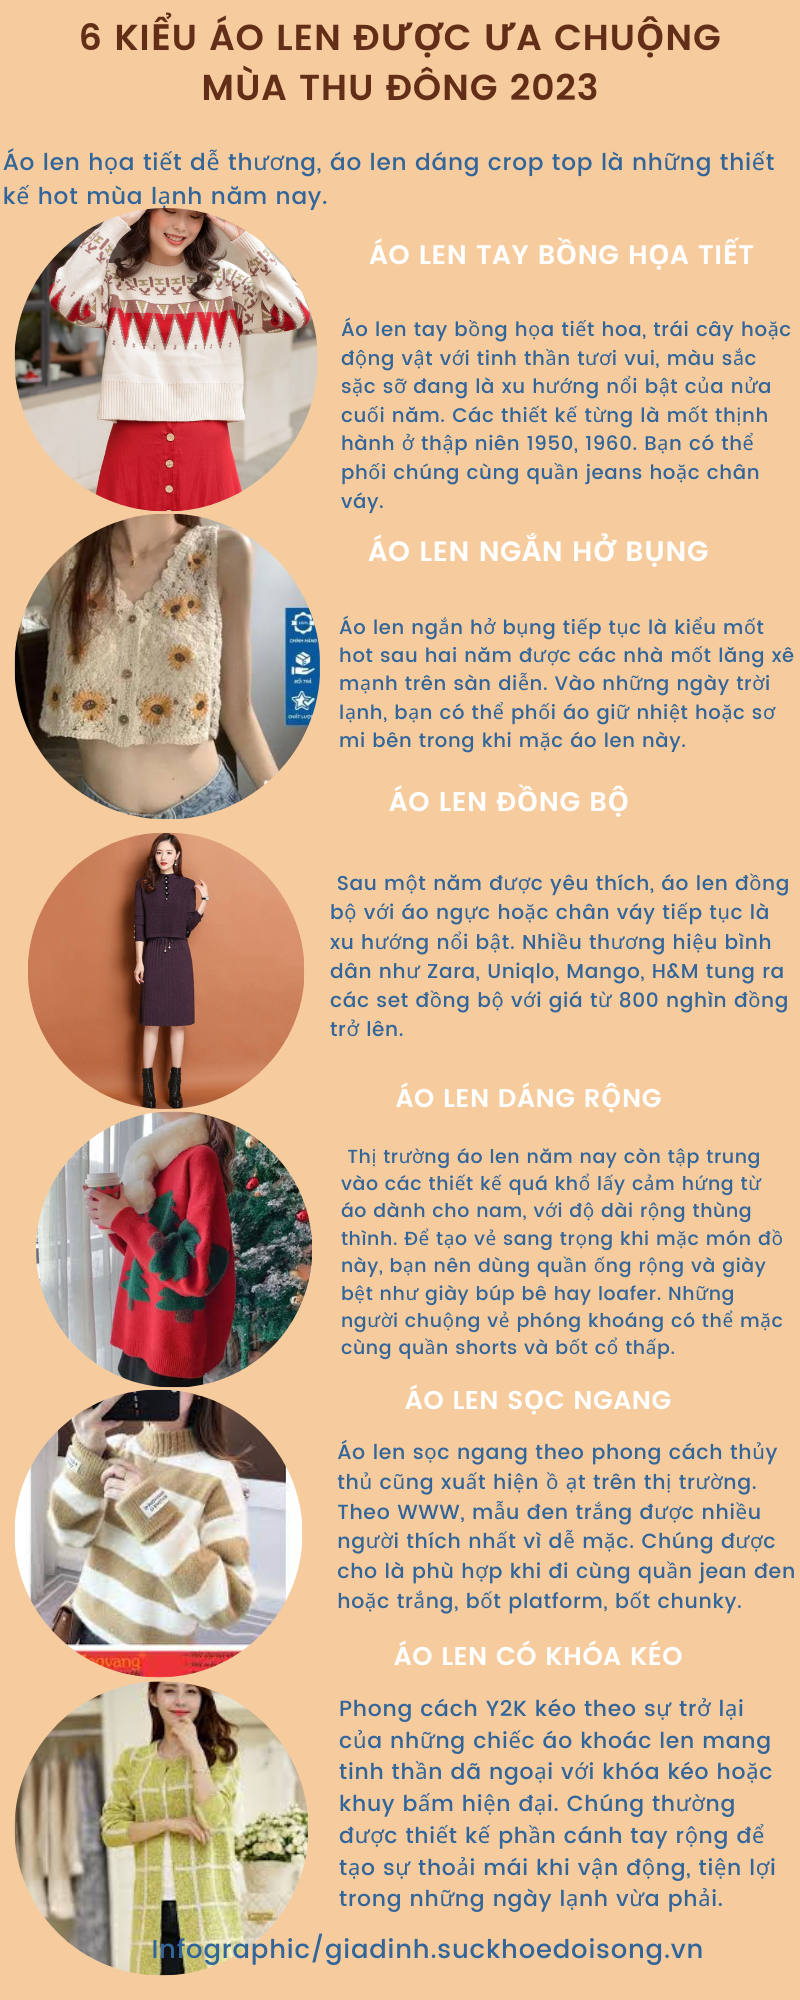 6 kiểu áo len được ưa chuộng Thu Đông 2023 - Ảnh 1.